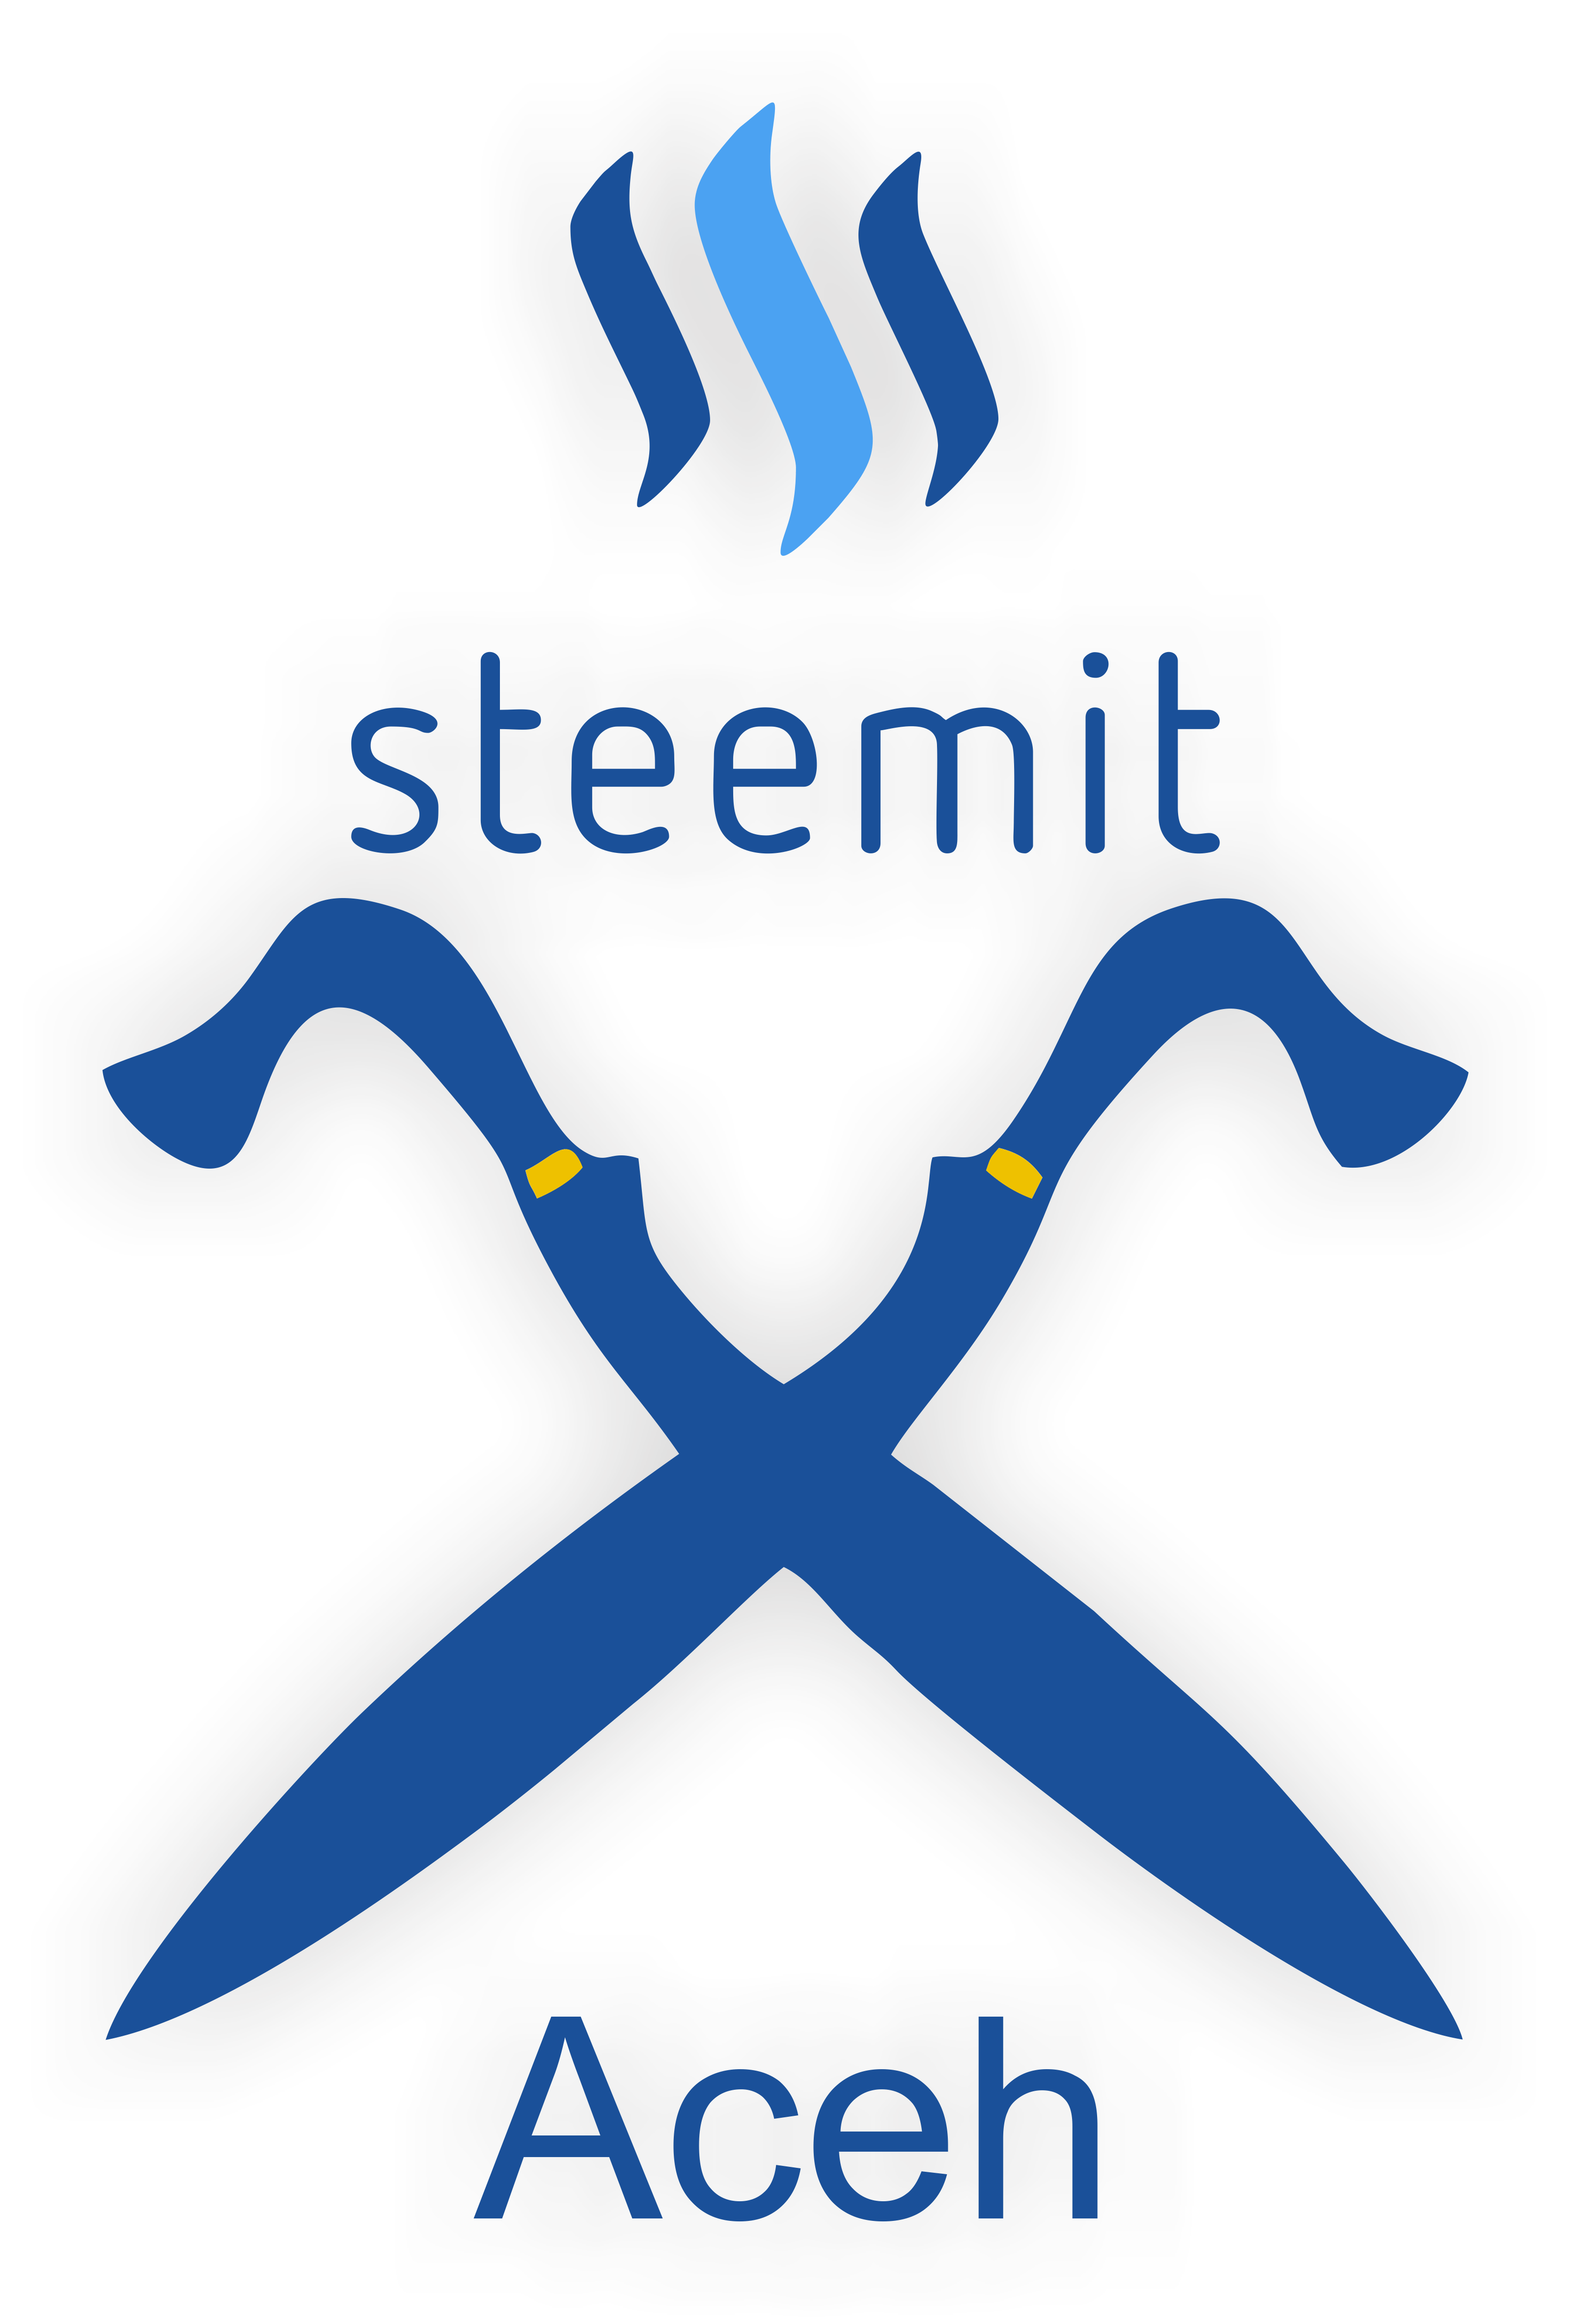 Steemit Logo - Aceh Steemit Logo Design by foways | Steem